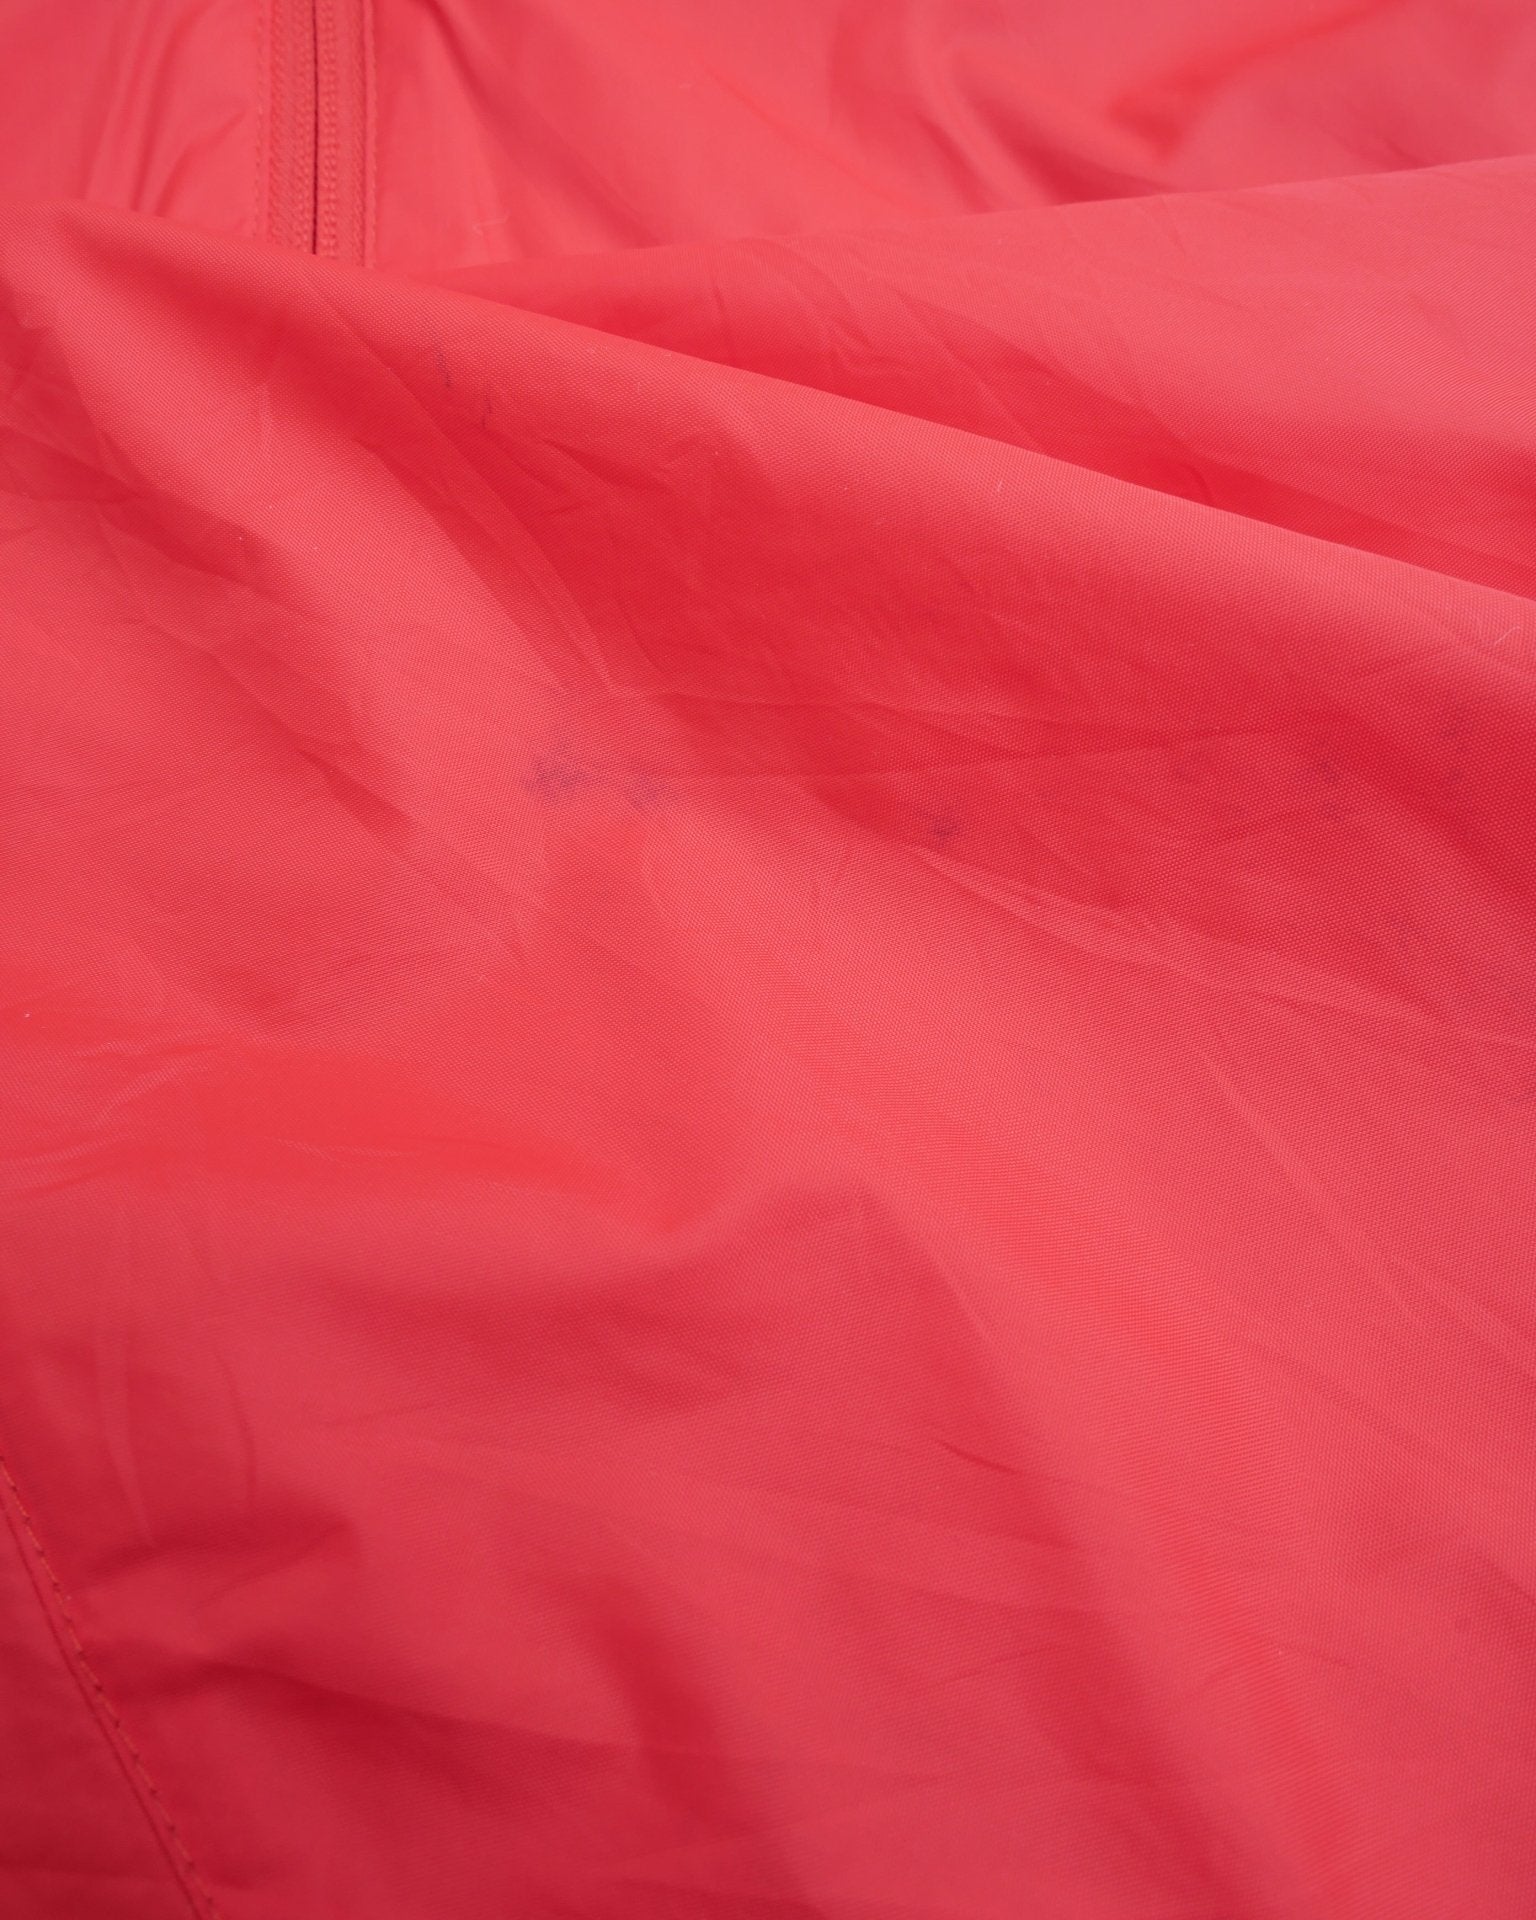 Nike printed Swoosh Vintage red Track Jacket - Peeces